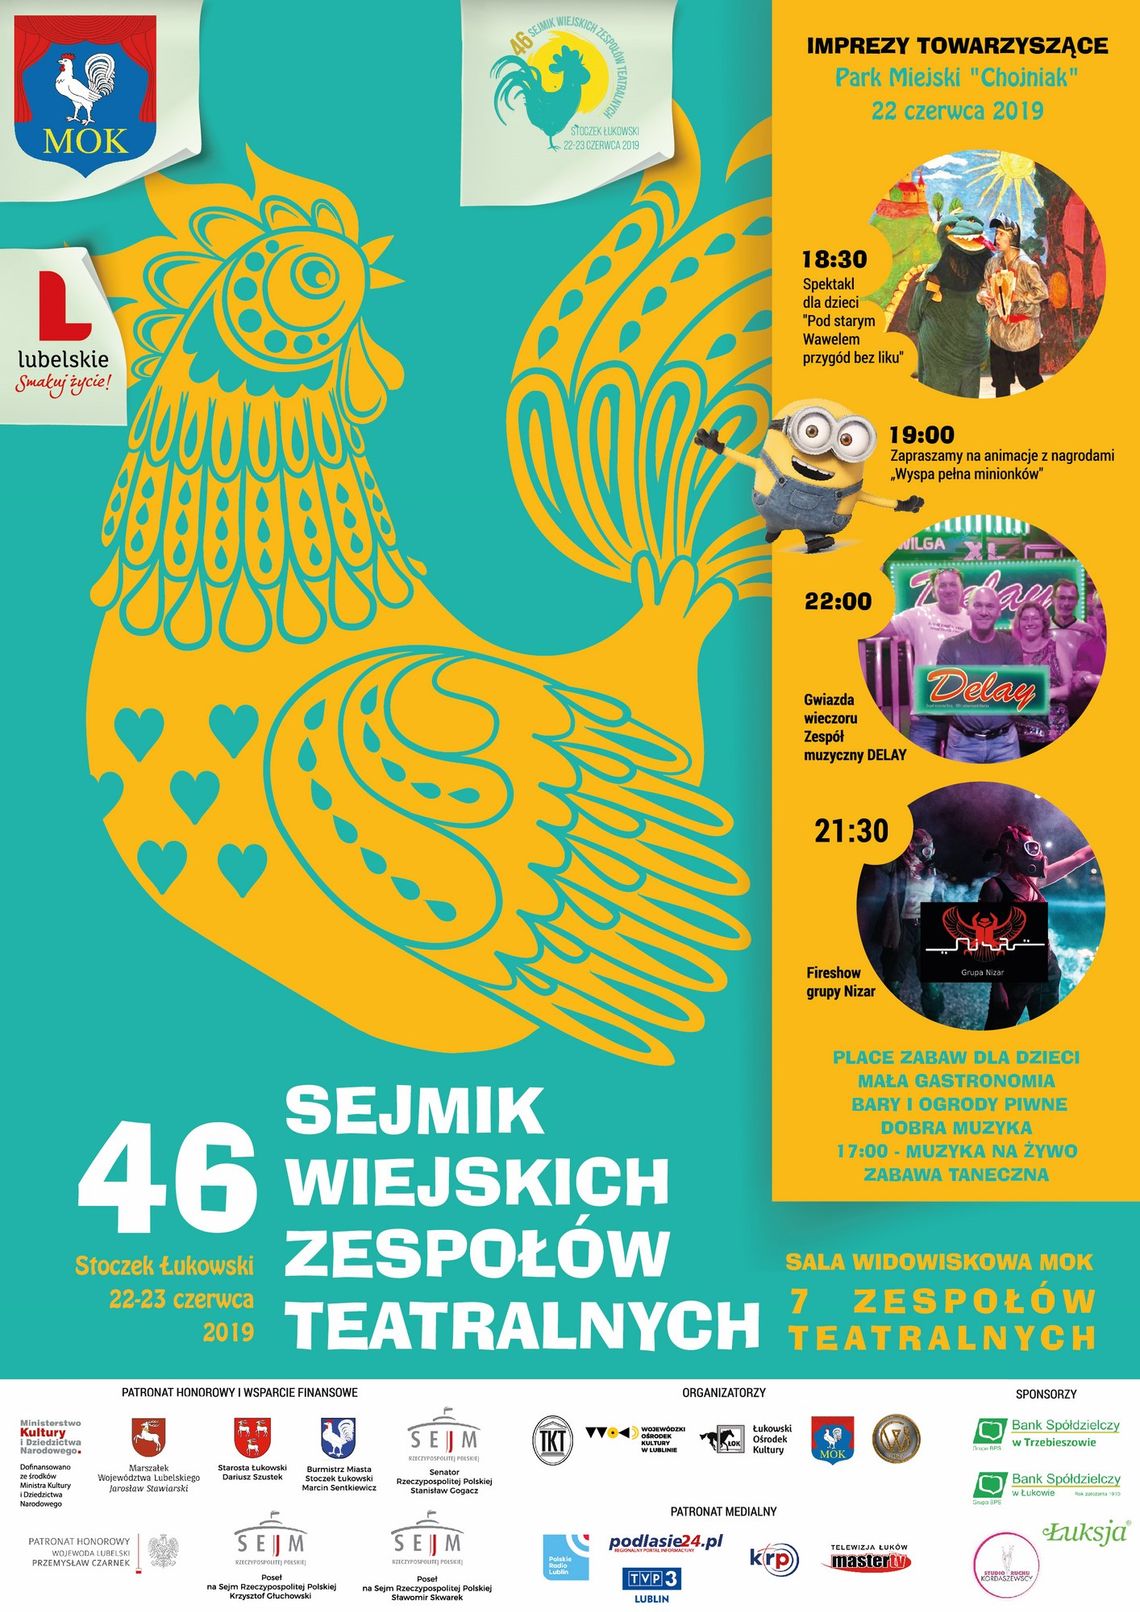 46. Sejmik Wiejskich Zespołów Teatralnych w Stoczku Łukowskim /22-23 czerwca